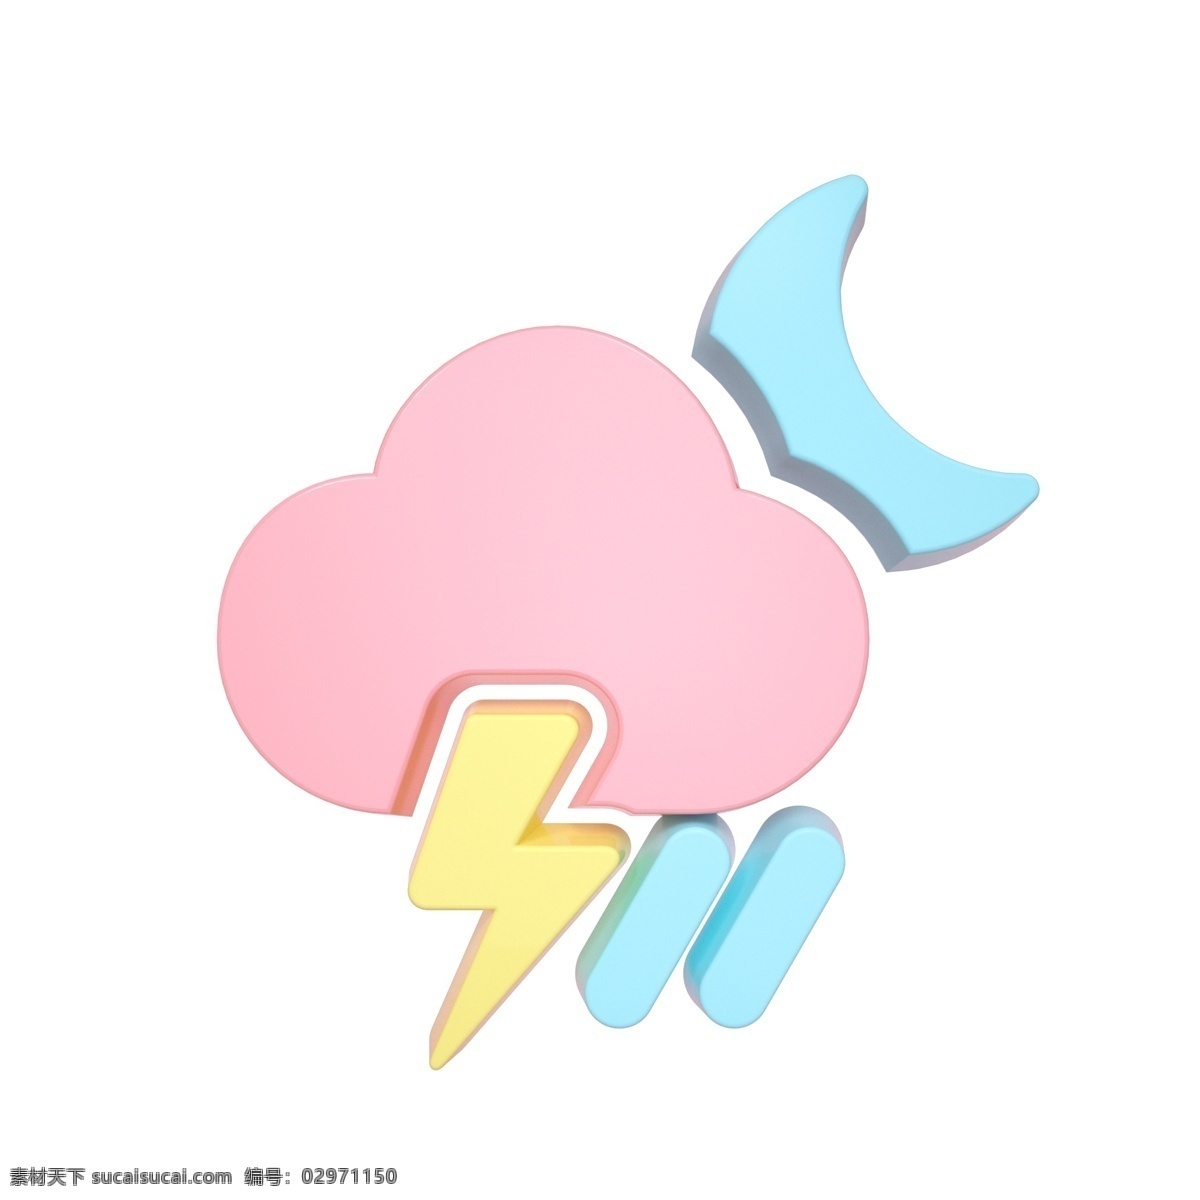 柔 色 天气 类 立体 图标 夜间 雷暴雨 c4d 3d 柔色 粉色 天气类图标 通用图标装饰 可爱 常用 夜间雷暴雨